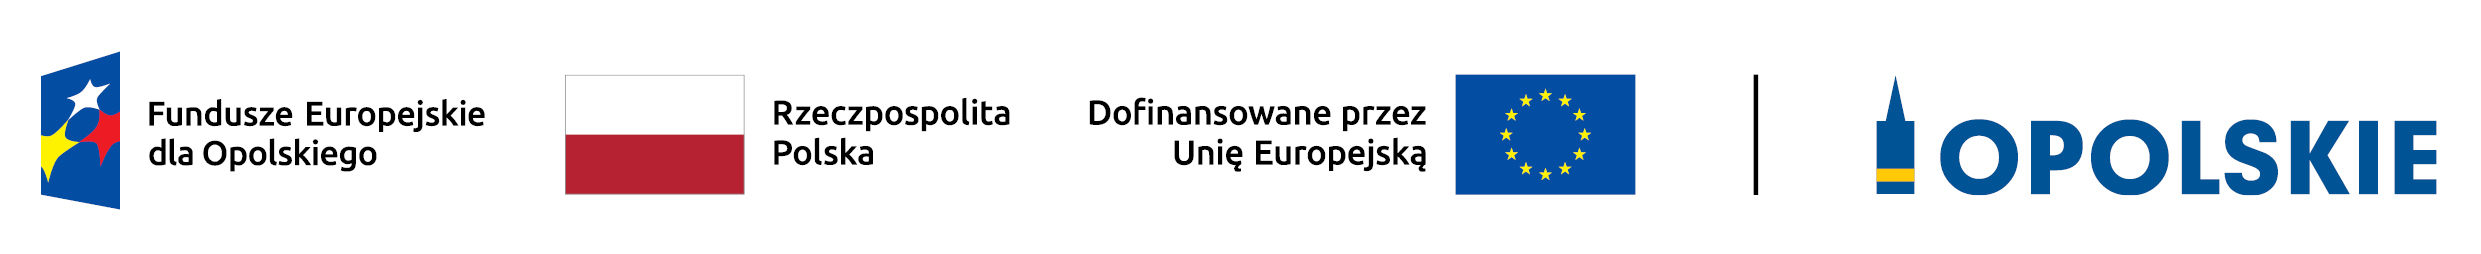 logotyp programu Fundusze Europejskie dla Opolskiego 2021-2027. logotyp składa się ze znaków: programu FEO 2021-2027, flagi polskiej, flagi Unii Europejskiej oraz logotypu województwa opolskiego